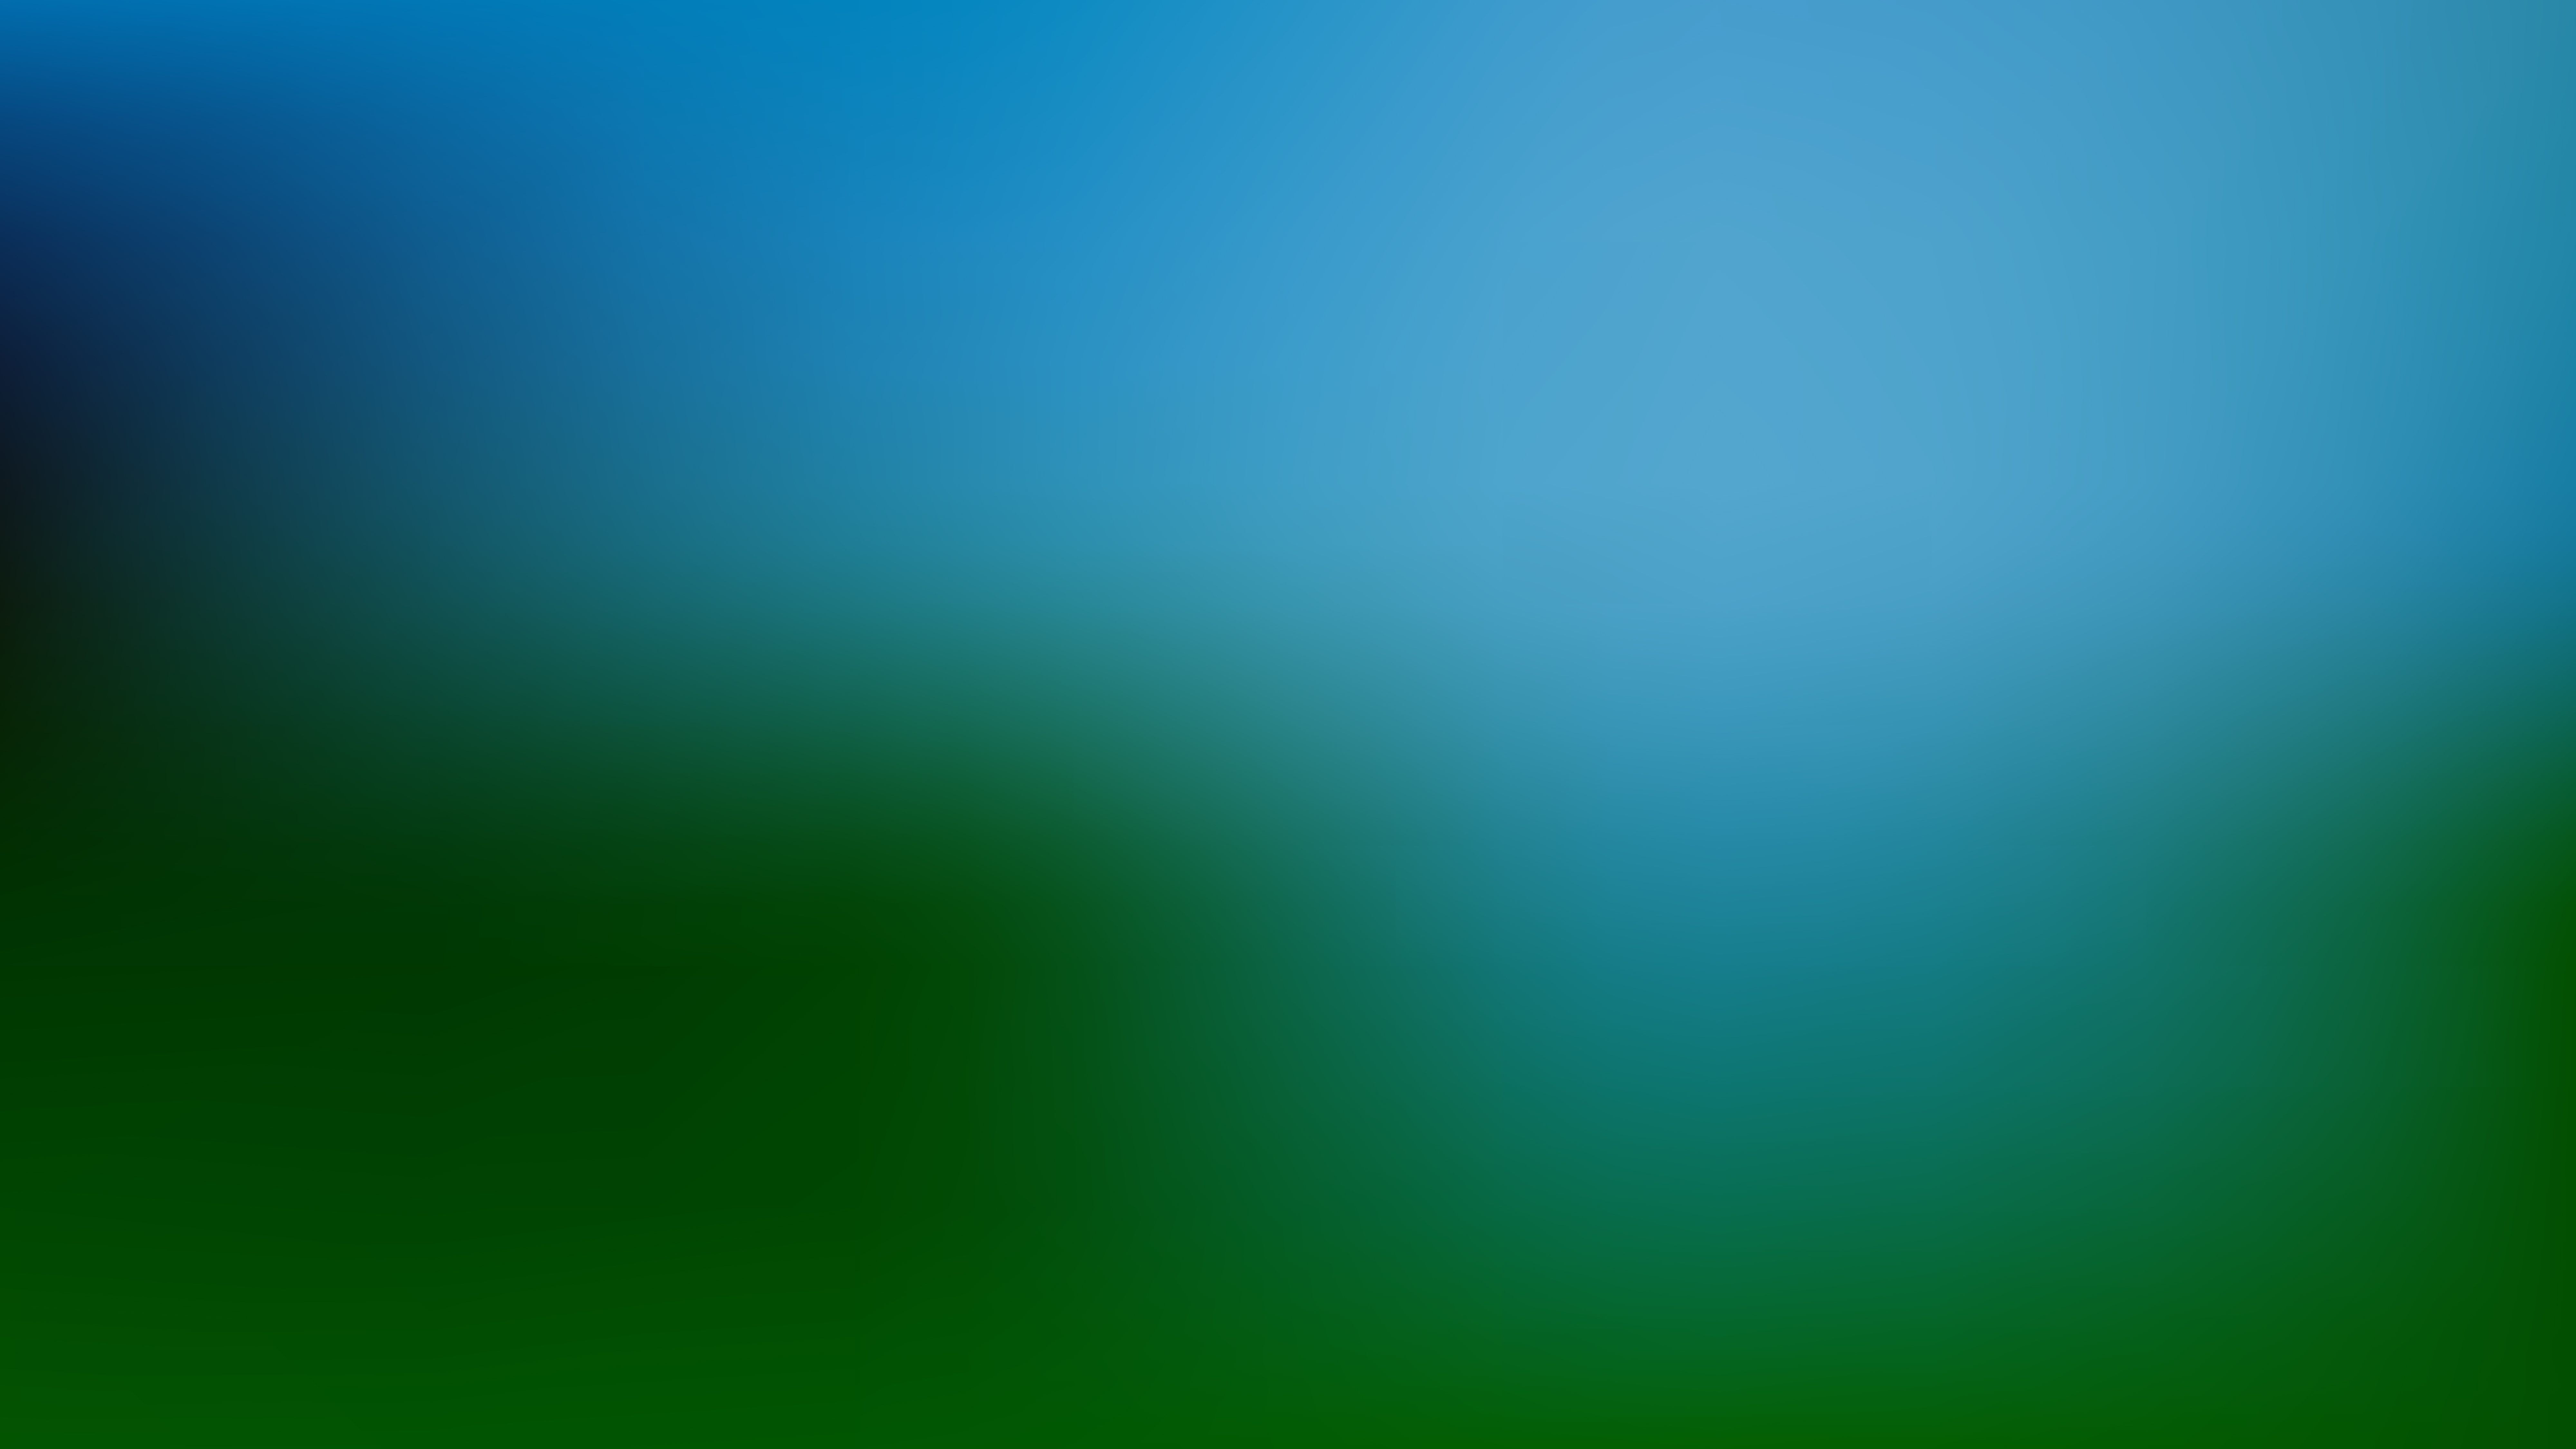 Blue And Green Blur Photo Wallpaper - Blue Green Blur Background -  8000x4500 Wallpaper 